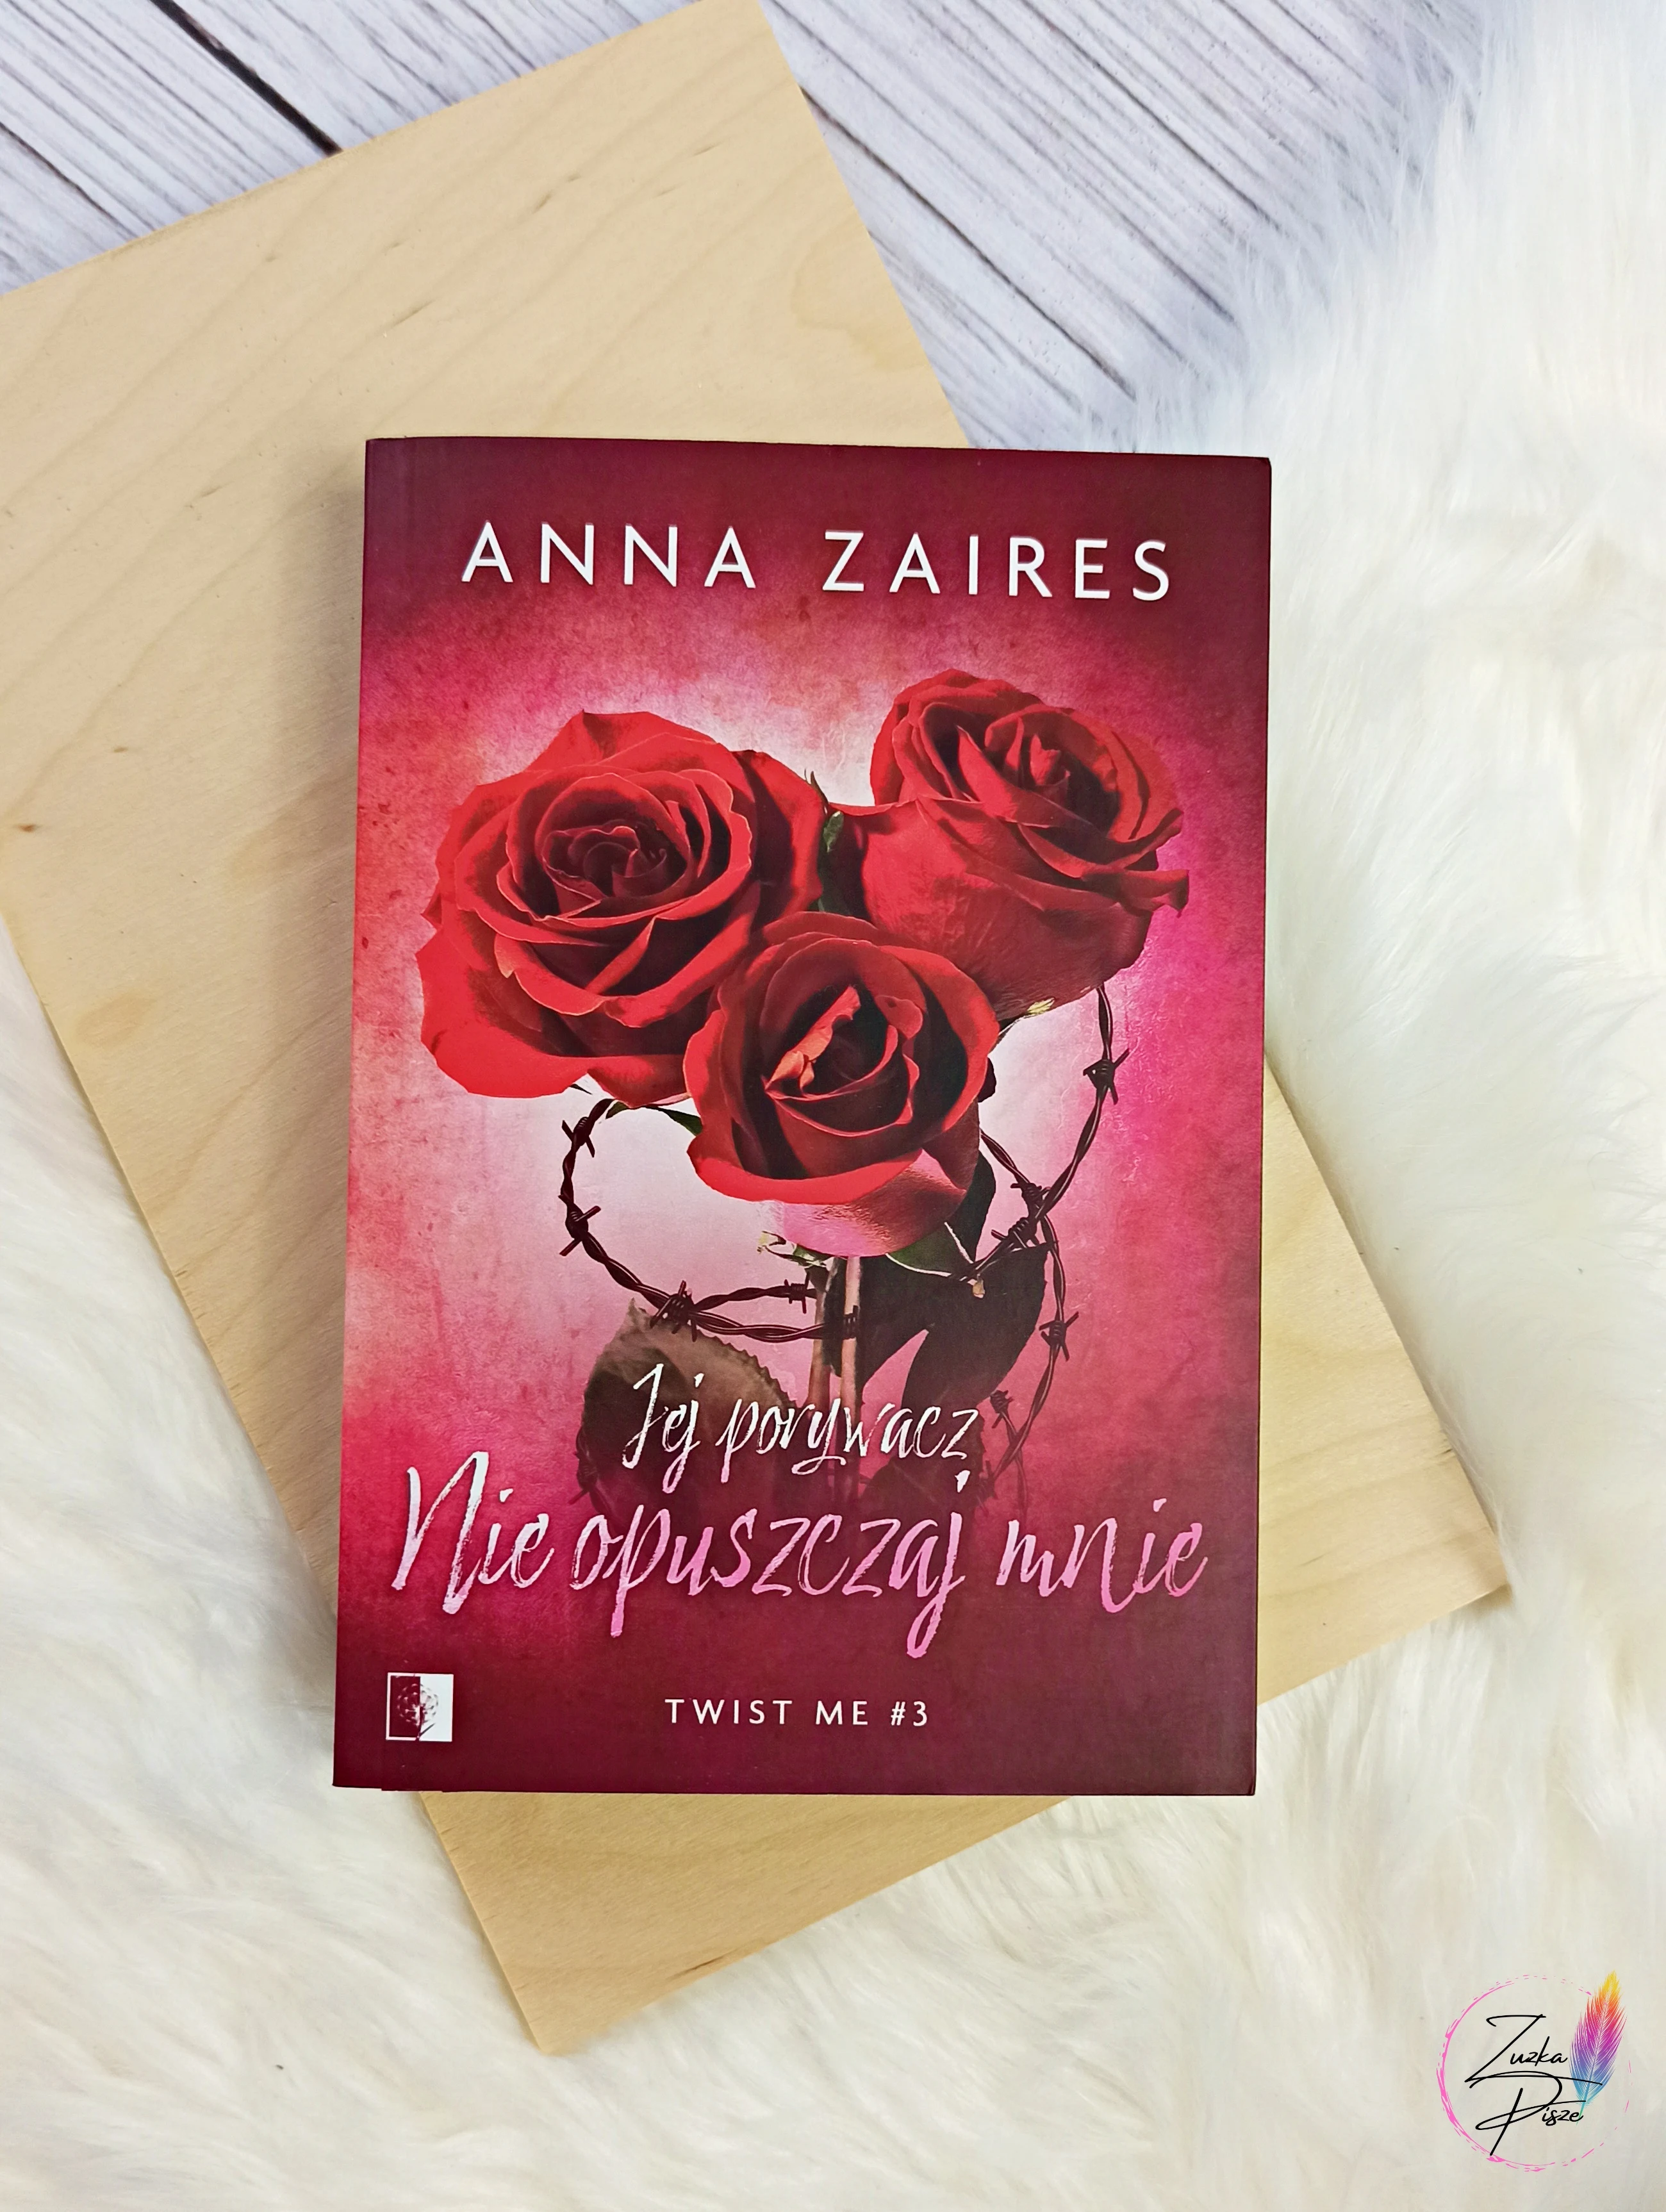 Anna Zaires "Jej porywacz. Nie opuszczaj mnie" - recenzja książki